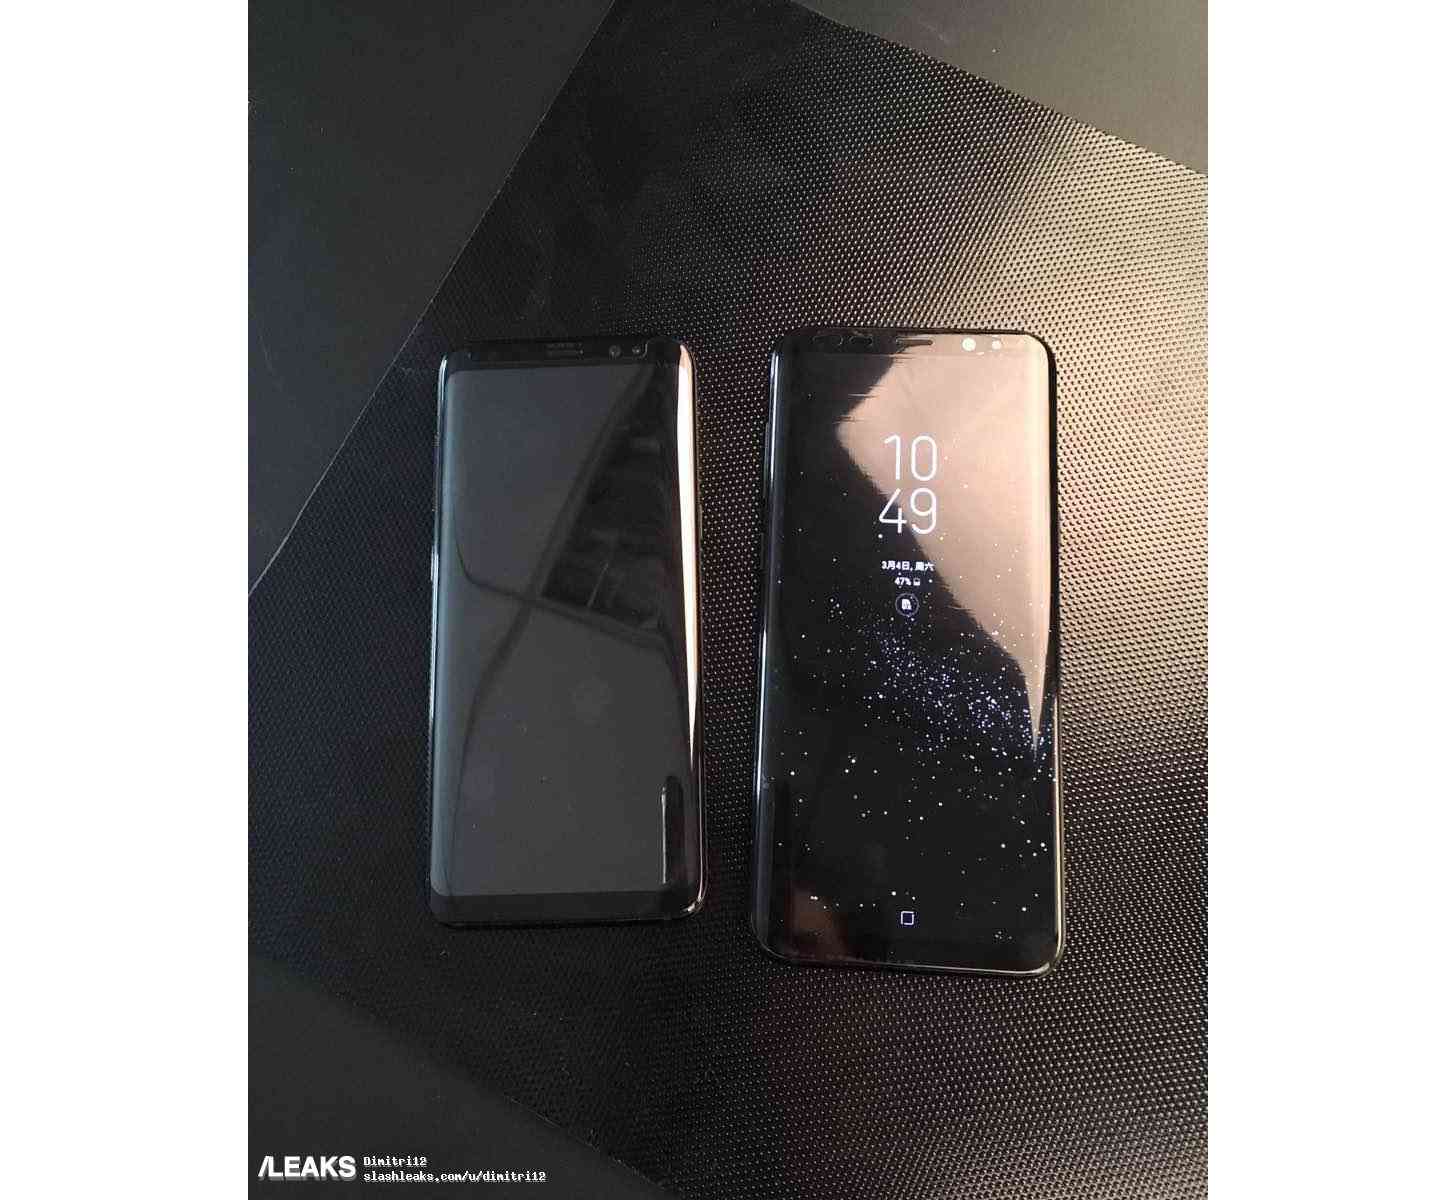 Samsung Galaxy S8, Galaxy S8+ side by side photo leak